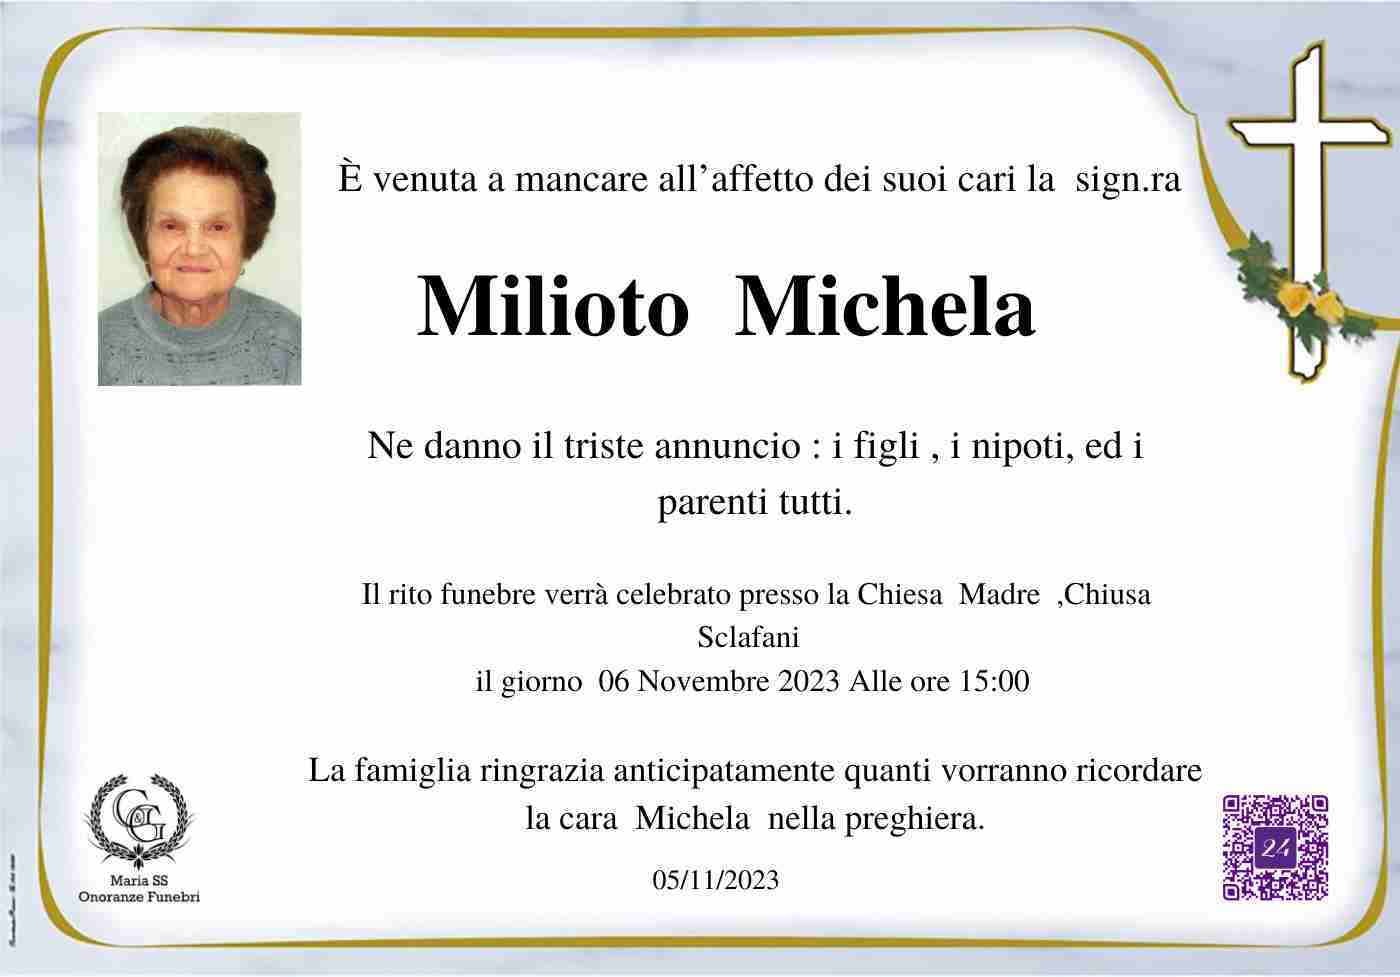 Michela Milioto